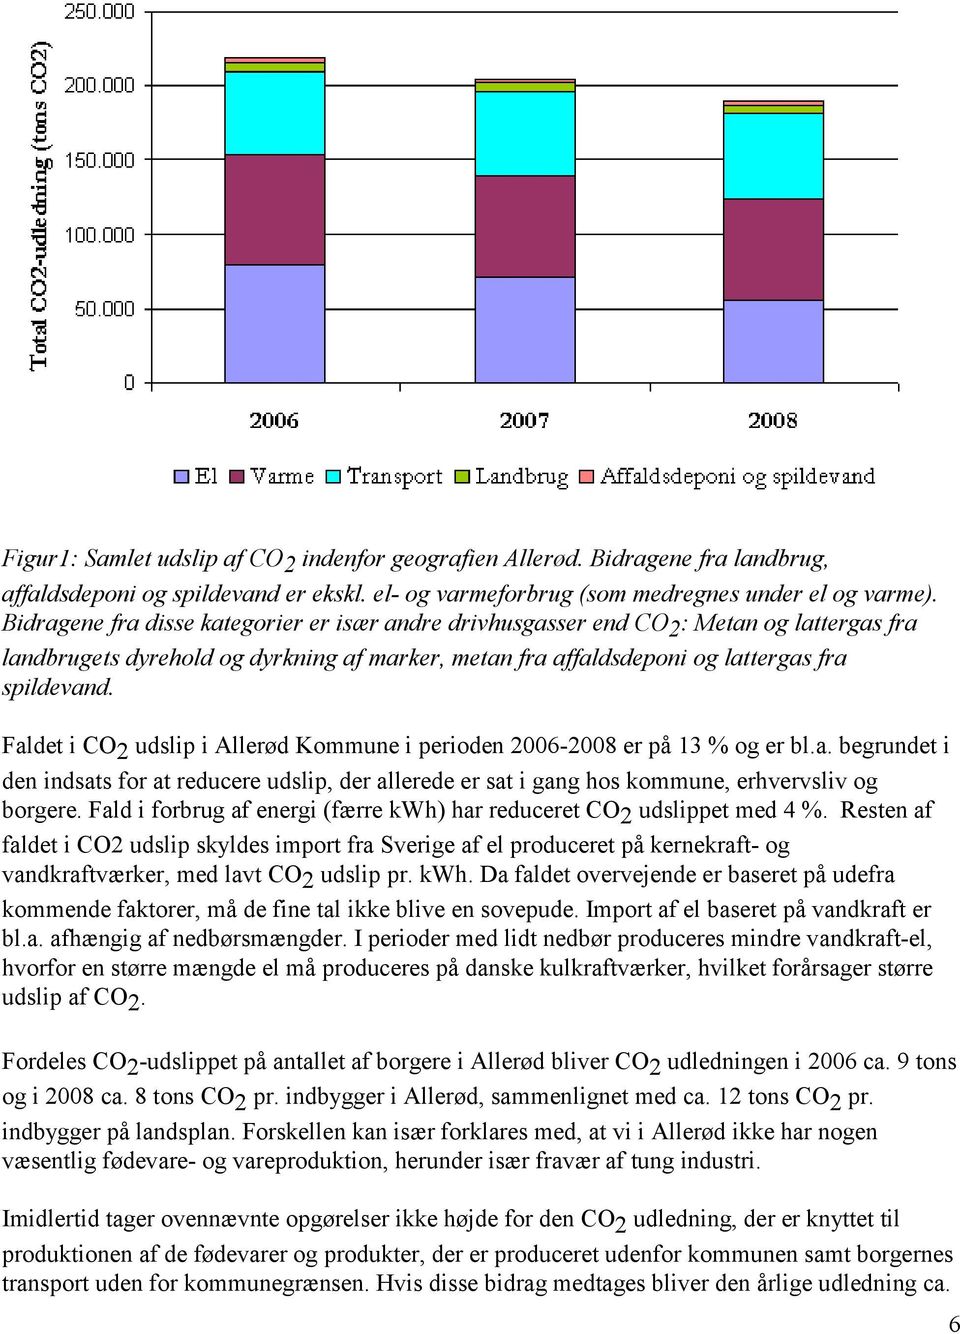 Faldet i CO 2 udslip i Allerød Kommune i perioden 2006-2008 er på 13 % og er bl.a. begrundet i den indsats for at reducere udslip, der allerede er sat i gang hos kommune, erhvervsliv og borgere.